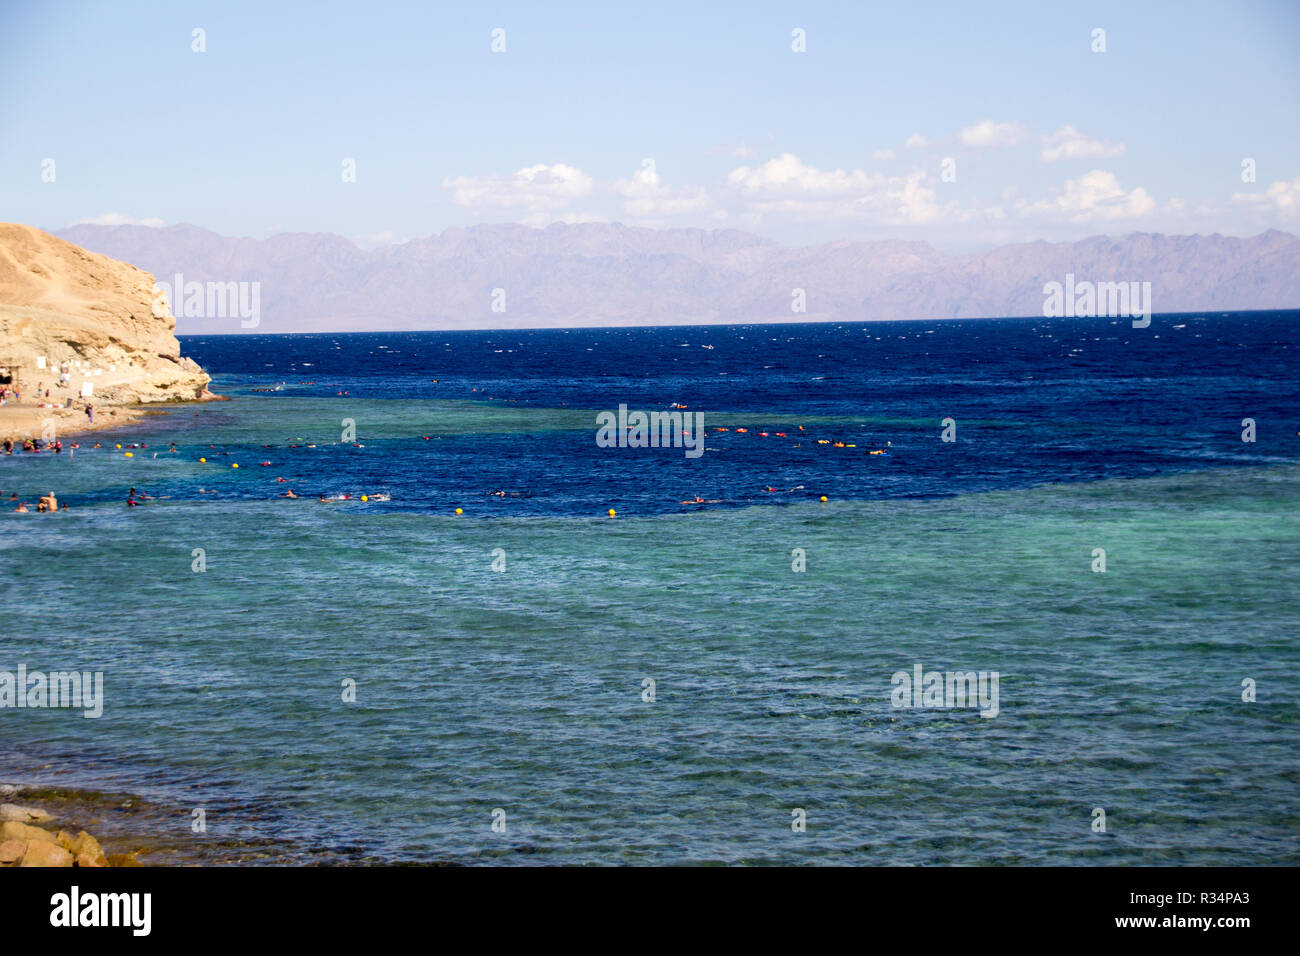 Sinaa, Ägypten - November 4, 2018: - Foto für die Küste des Roten Meeres in der ägyptischen Stadt Sinaa, die Wasser zeigen und einige Felsen. Stockfoto